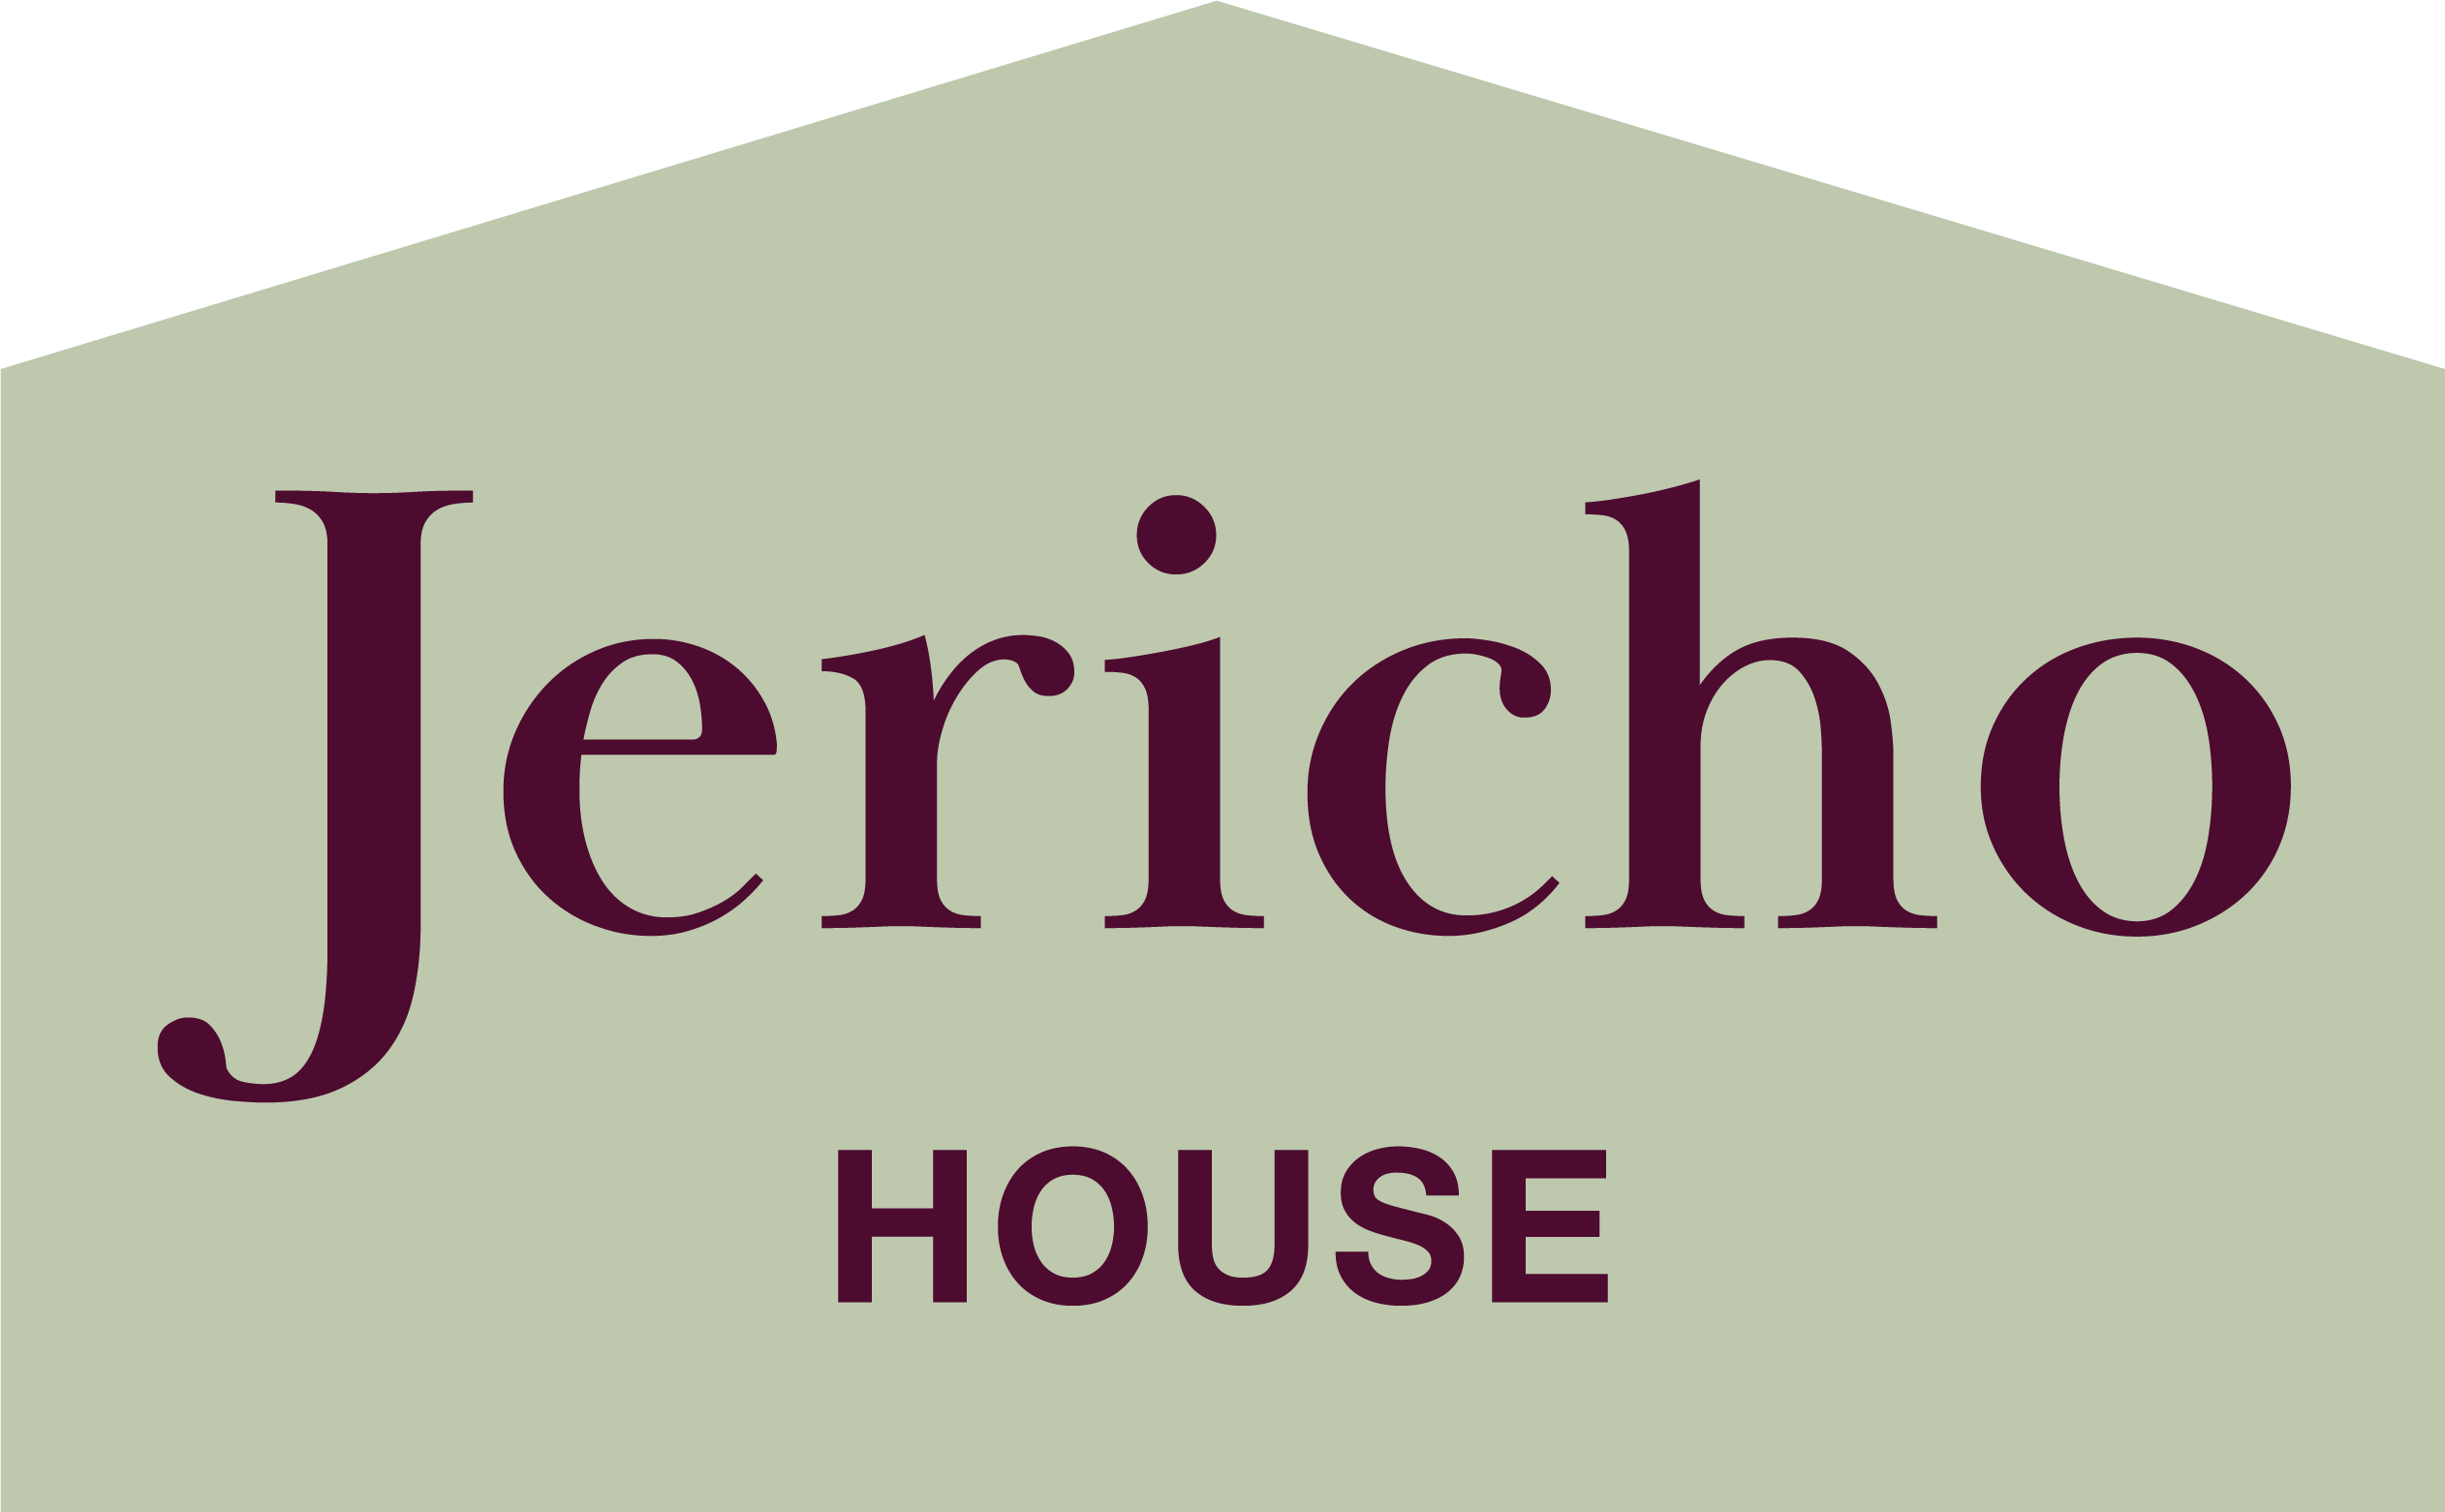 Jericho House